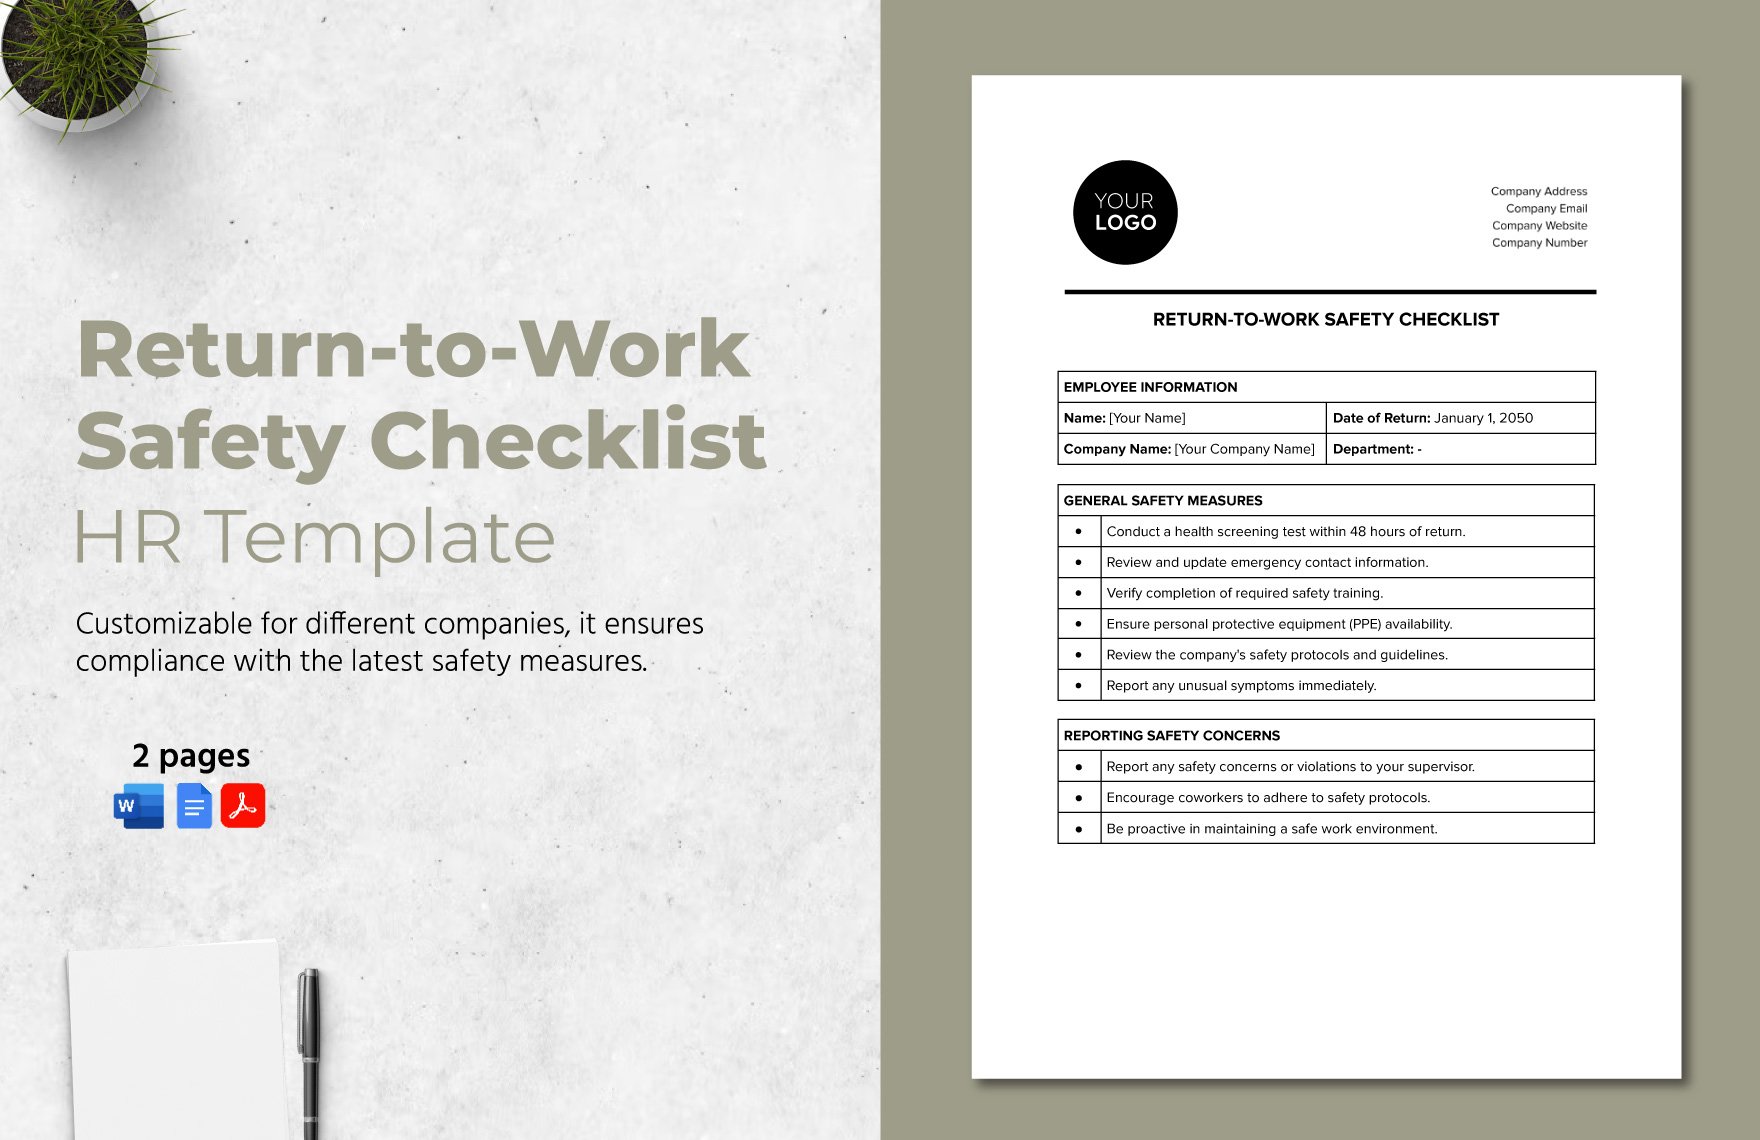 Return-to-Work Safety Checklist HR Template